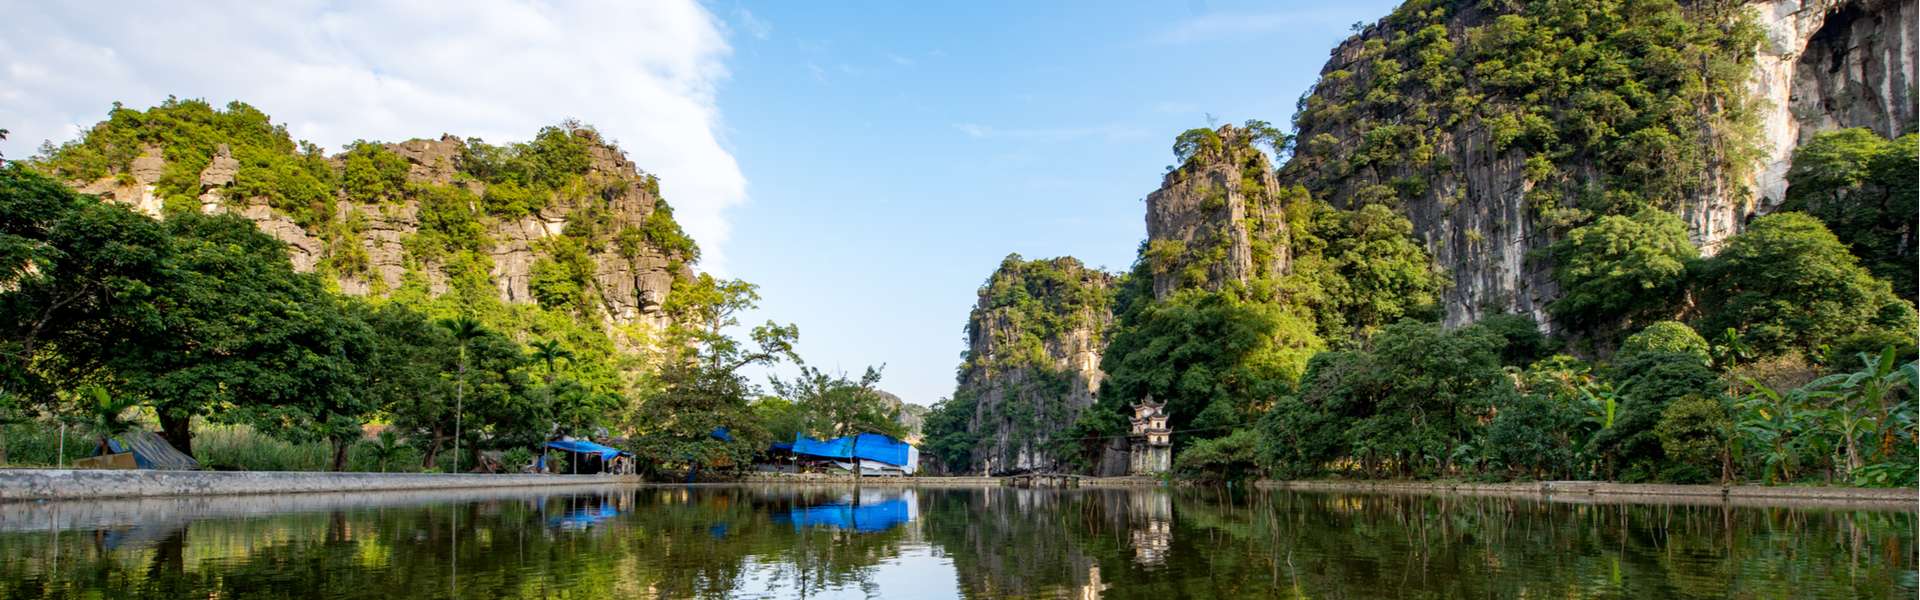 Vườn quốc gia mang đến cho chúng ta khoảng không gian xanh tươi mát, với những cảnh quan hoang sơ và đầy mê hoặc. Hãy xem hình ảnh để khám phá các khu vườn quốc gia đẹp nhất Việt Nam và tham quan thực tế để cảm nhận sự tuyệt vời của nó.